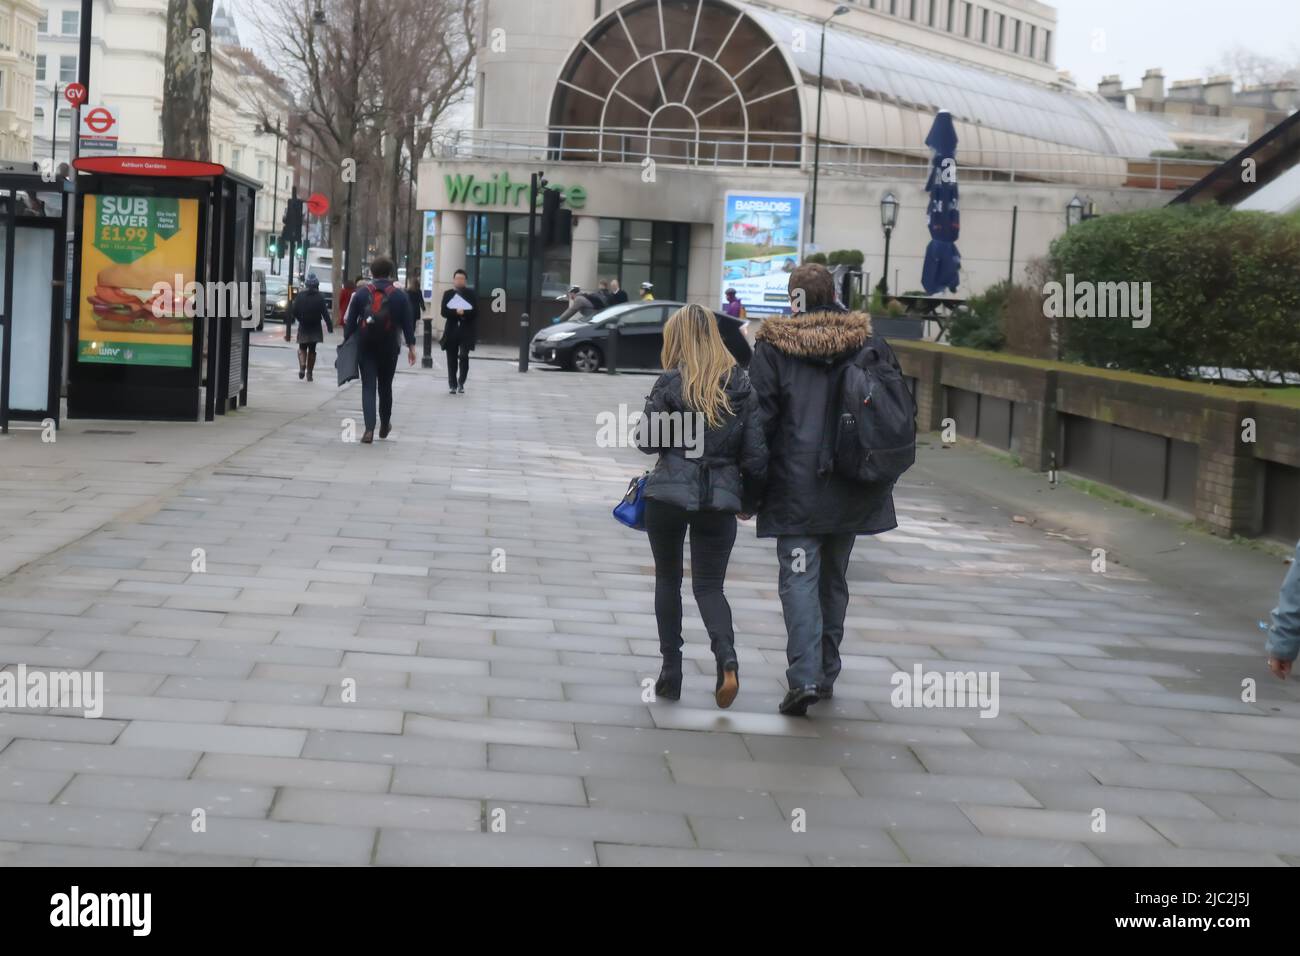 2018 01 10 London UK Mann und Frau mit langen blonden Haaren, beide in Wintermänteln gekleidet, mit einem Rucksack, gehen von der Kamerastraße weg Stockfoto